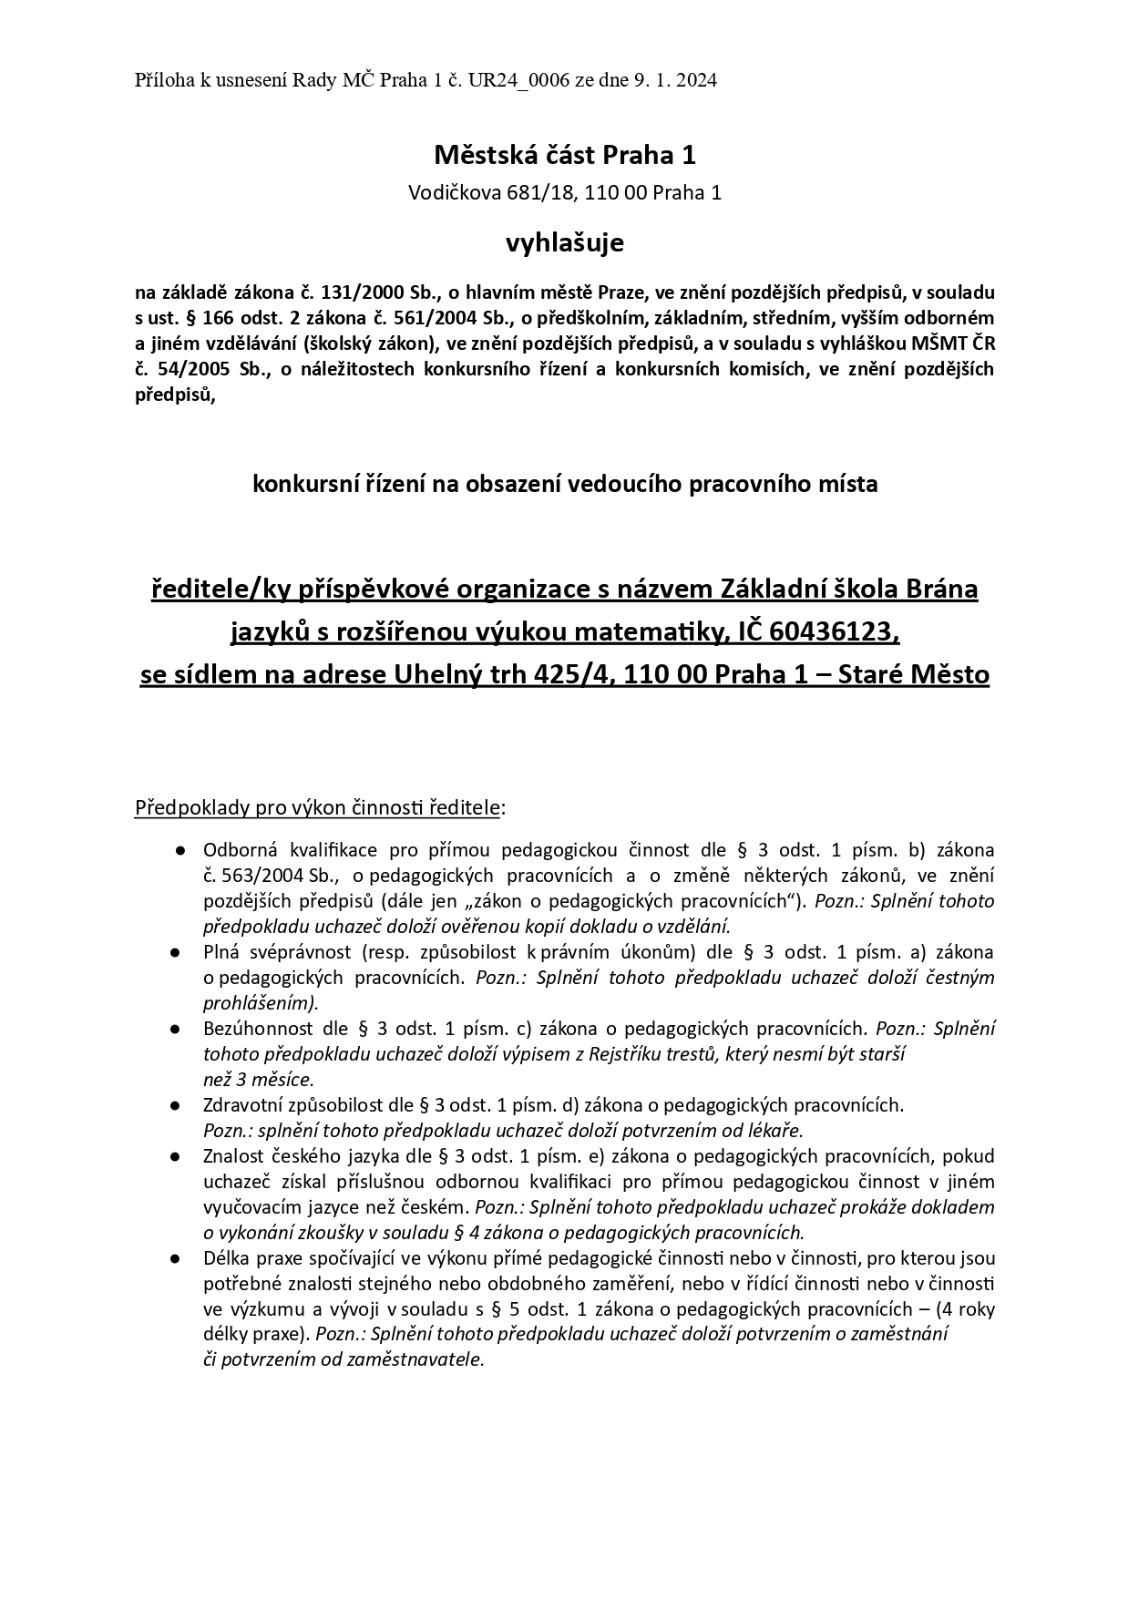 Konkursní řízení - ZŠ Brána jazyků.doc - Dokumenty Google_page-0001.jpg